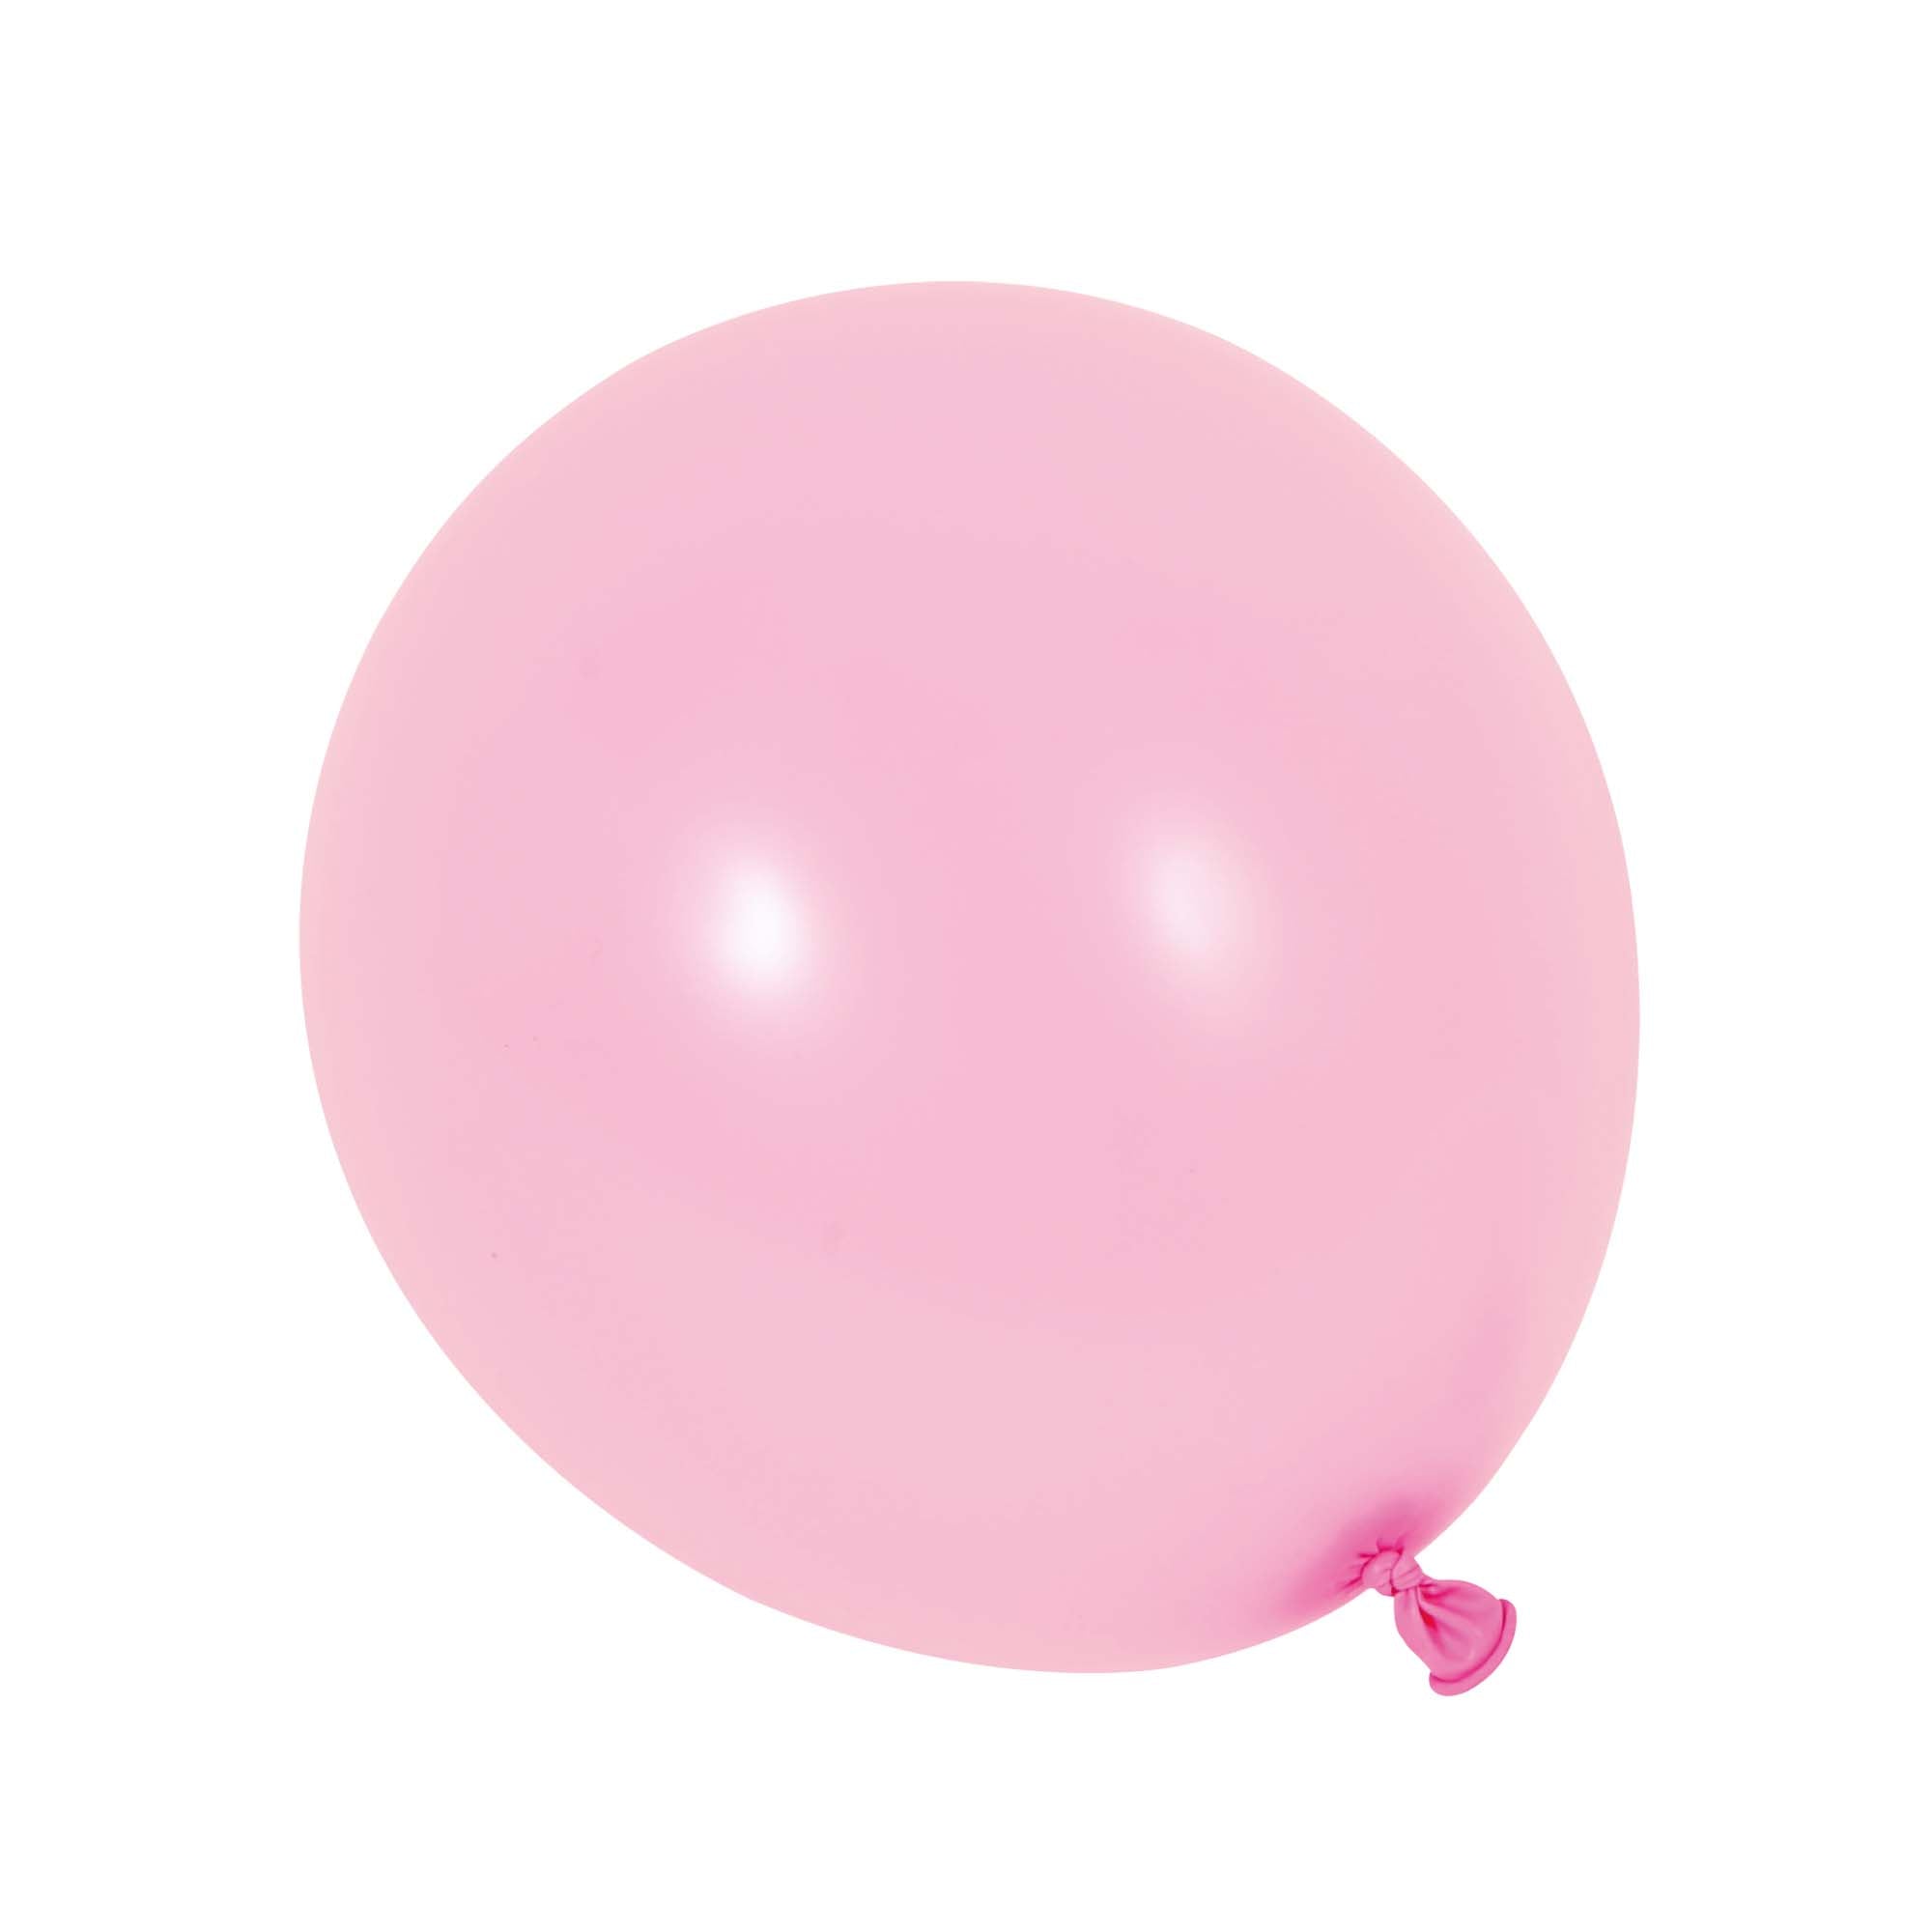 Venta al por mayor de globos para fiestas - Decoraciones para fiestas y más